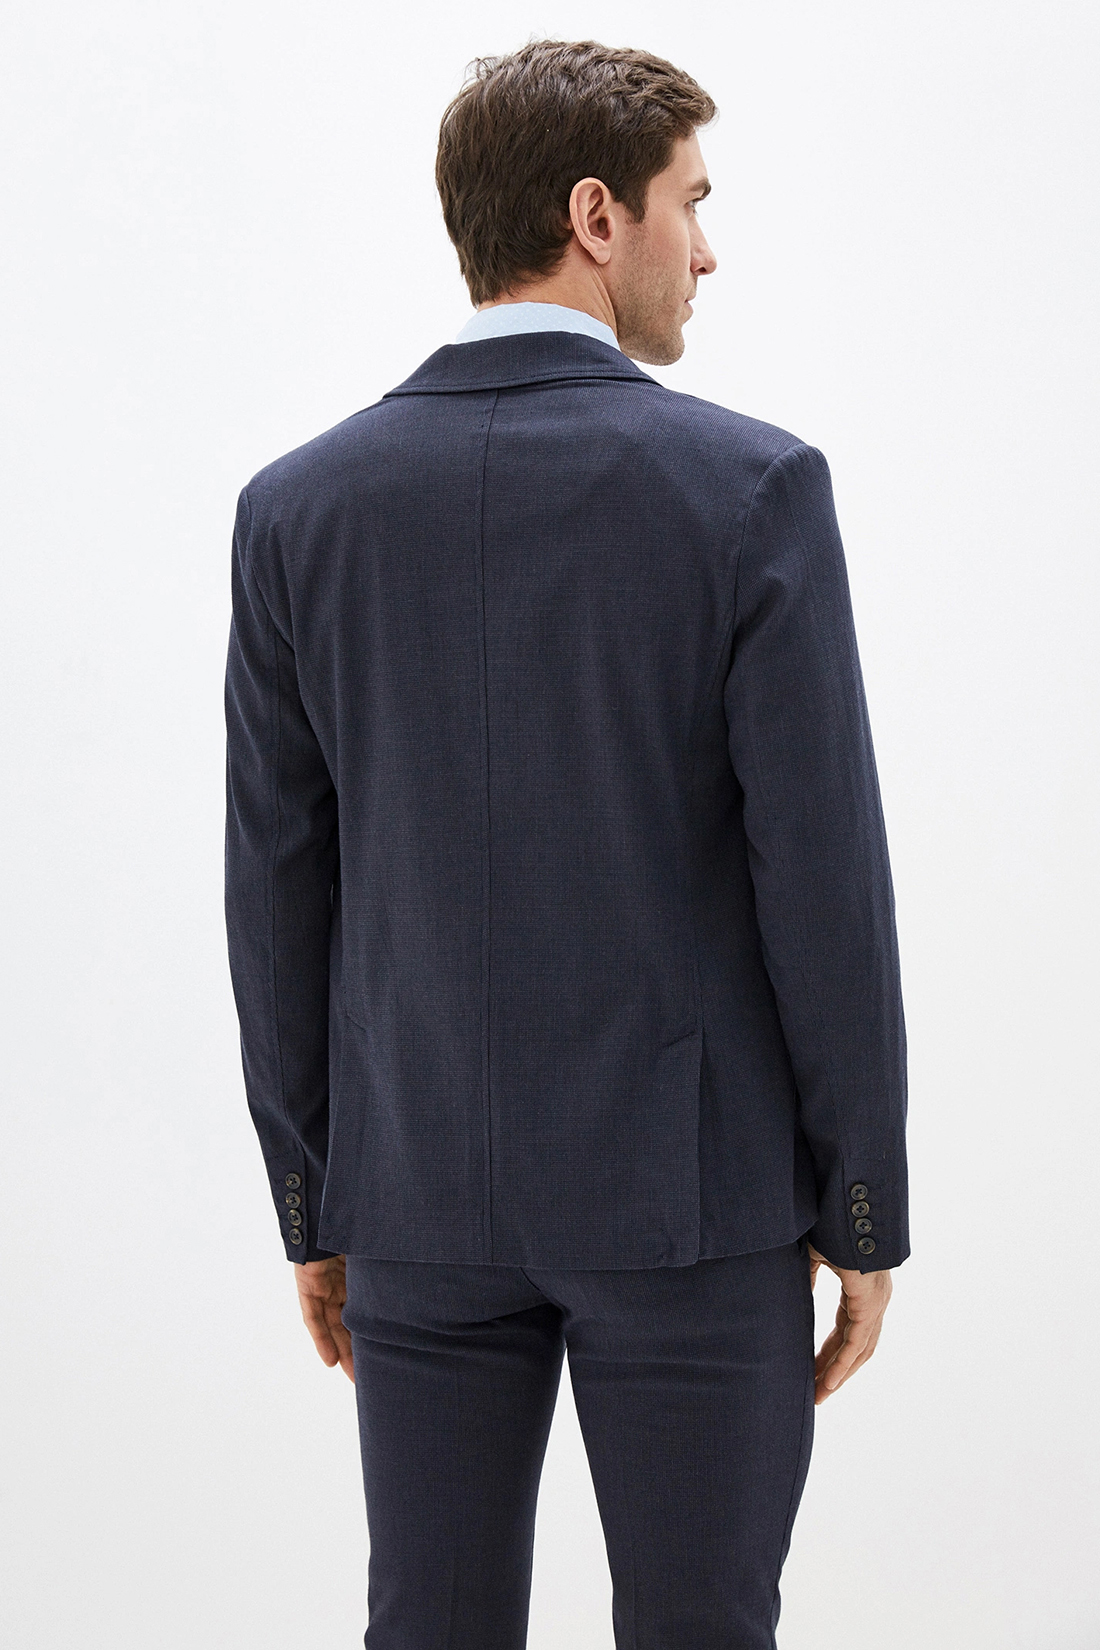 Повседневный пиджак (арт. baon B620002), размер S, цвет синий Повседневный пиджак (арт. baon B620002) - фото 2